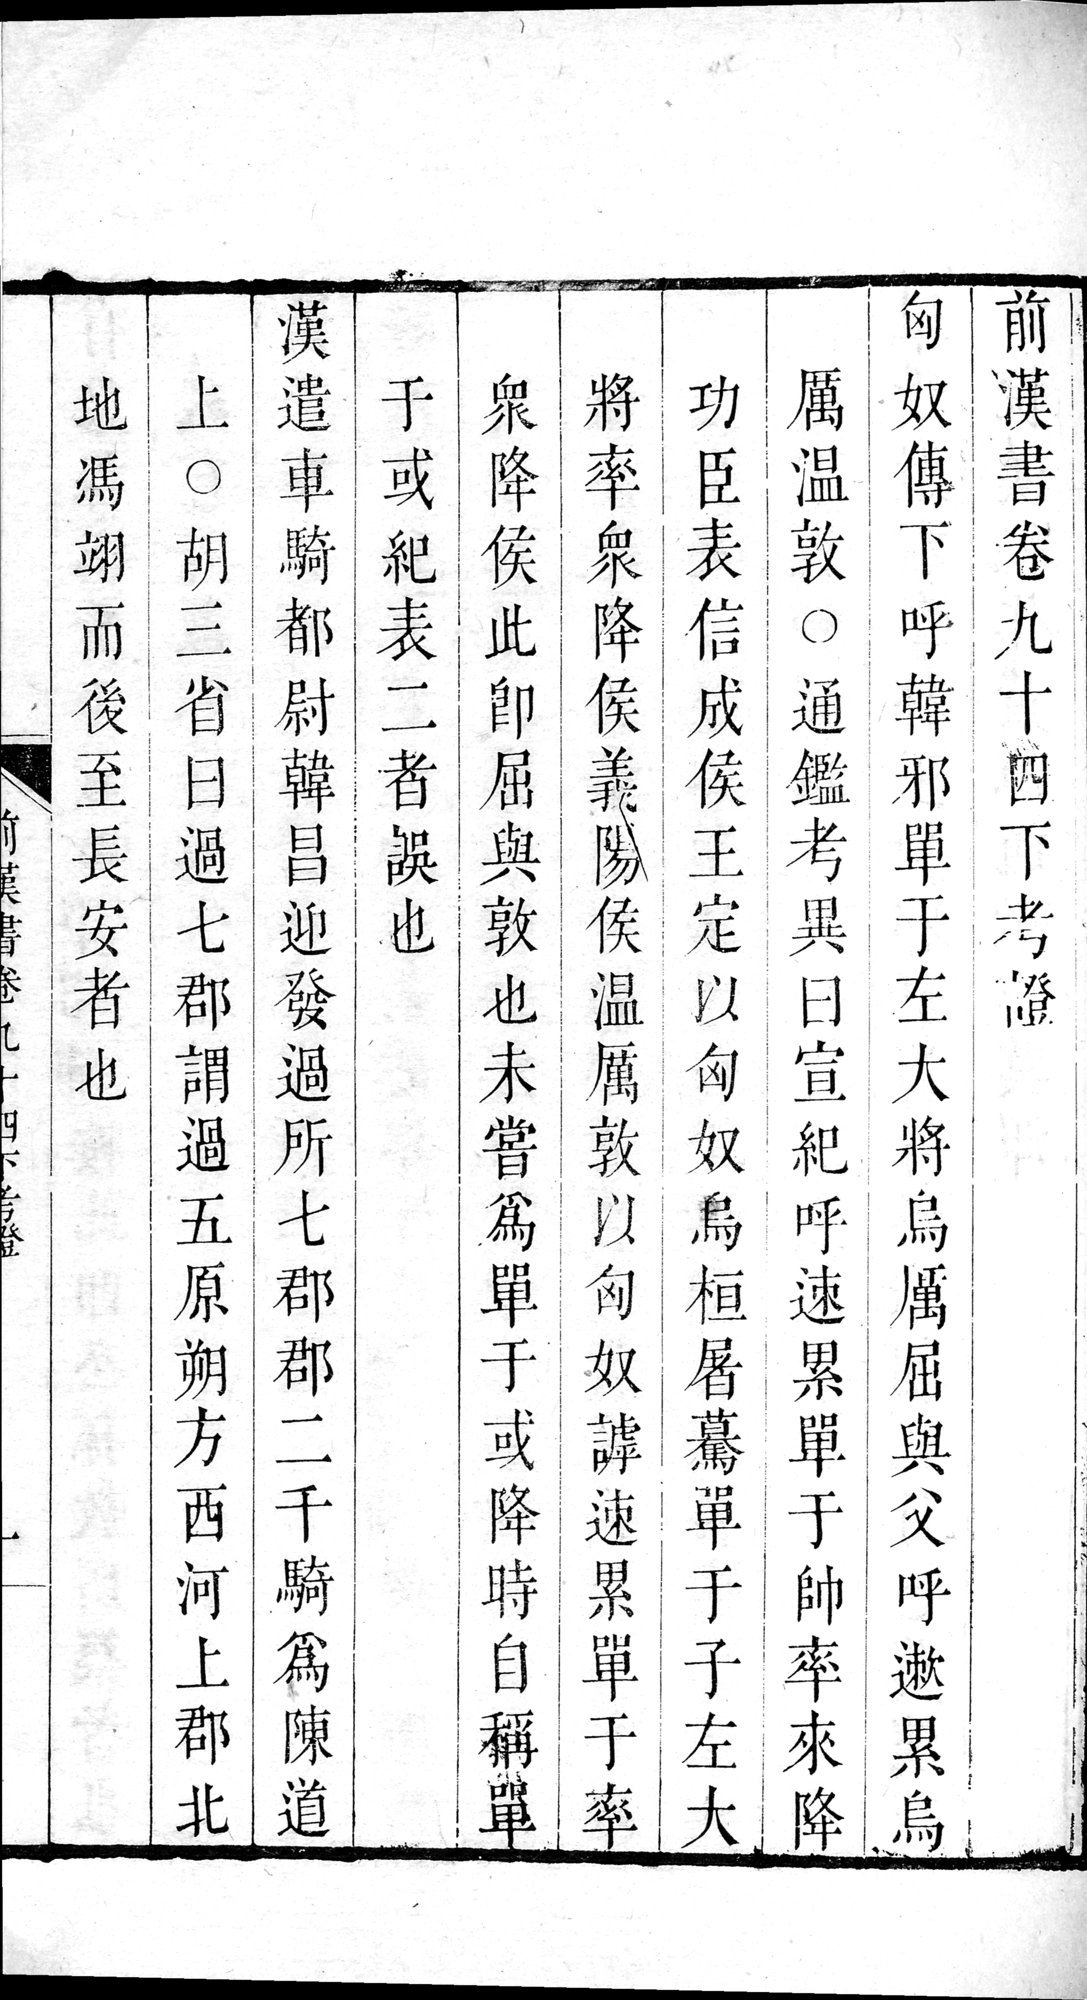 前漢書 : vol.94 bottom / Page 63 (Grayscale High Resolution Image)